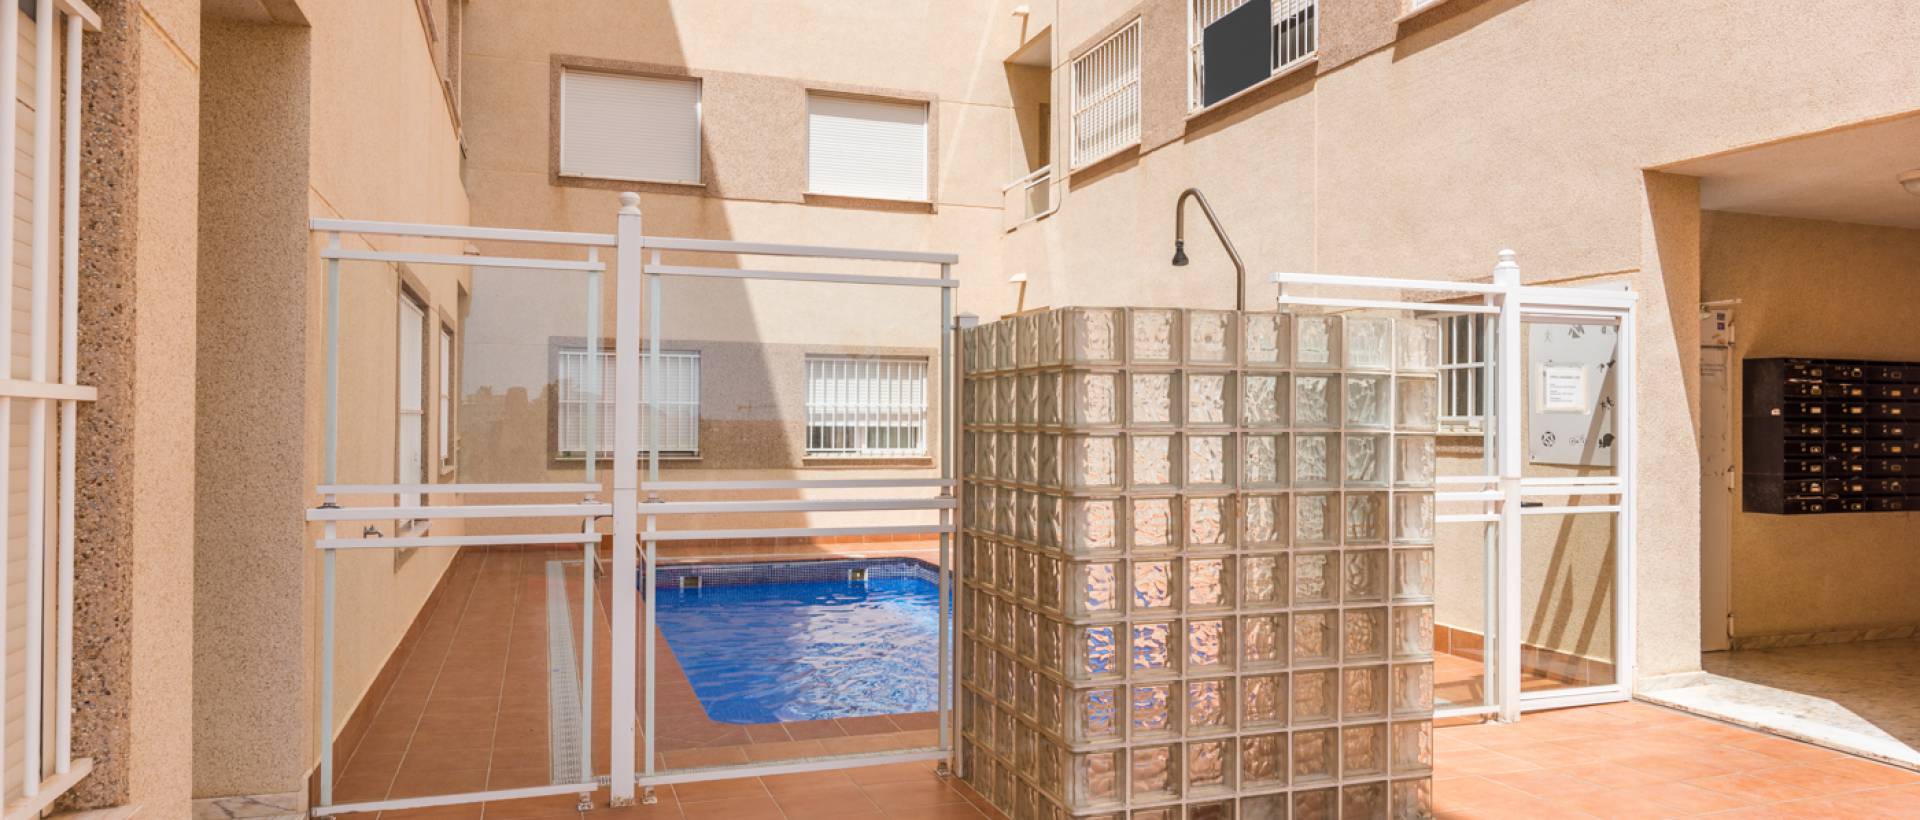 Piscina | Comprar apartamento moderno en Formentera del Segura